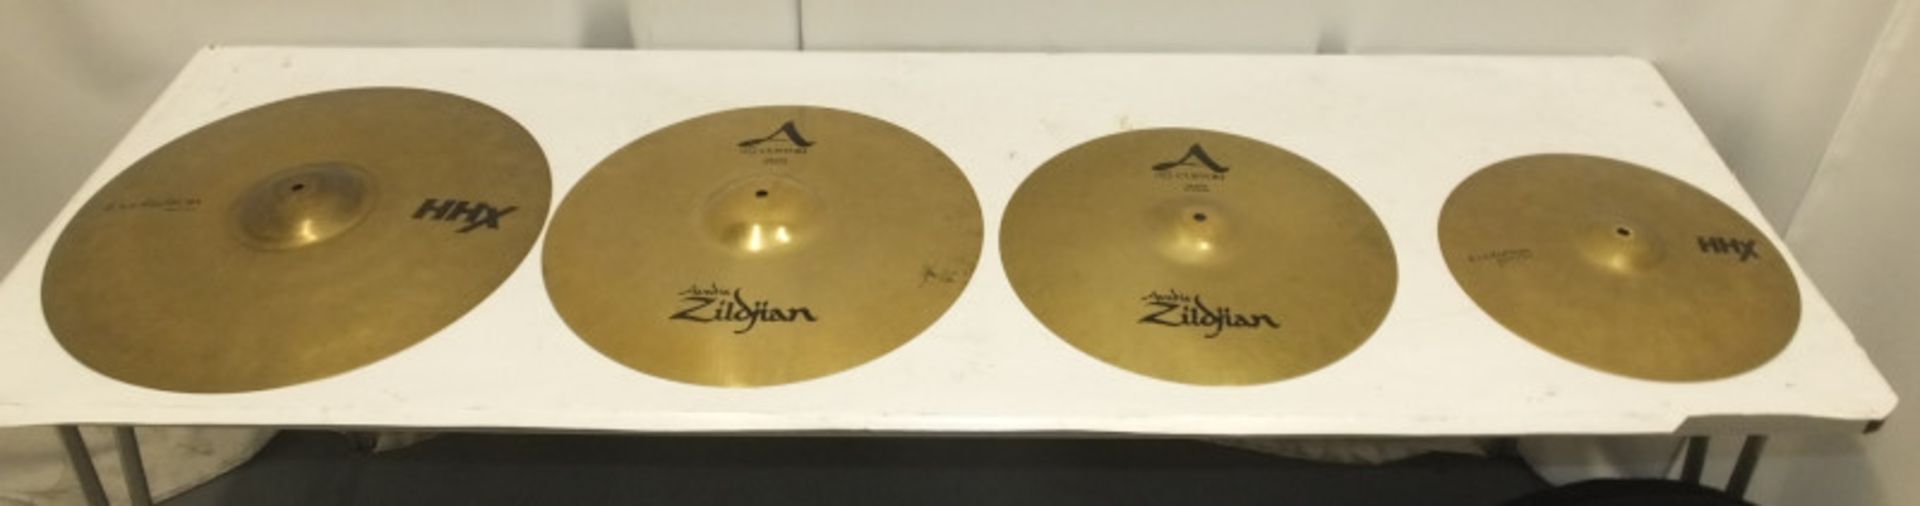 16" & 18" Zildjian A Custom Crash Cymbals (dent to 18" rim), Sabian 14" HHX Evolution Hi-Hats & more